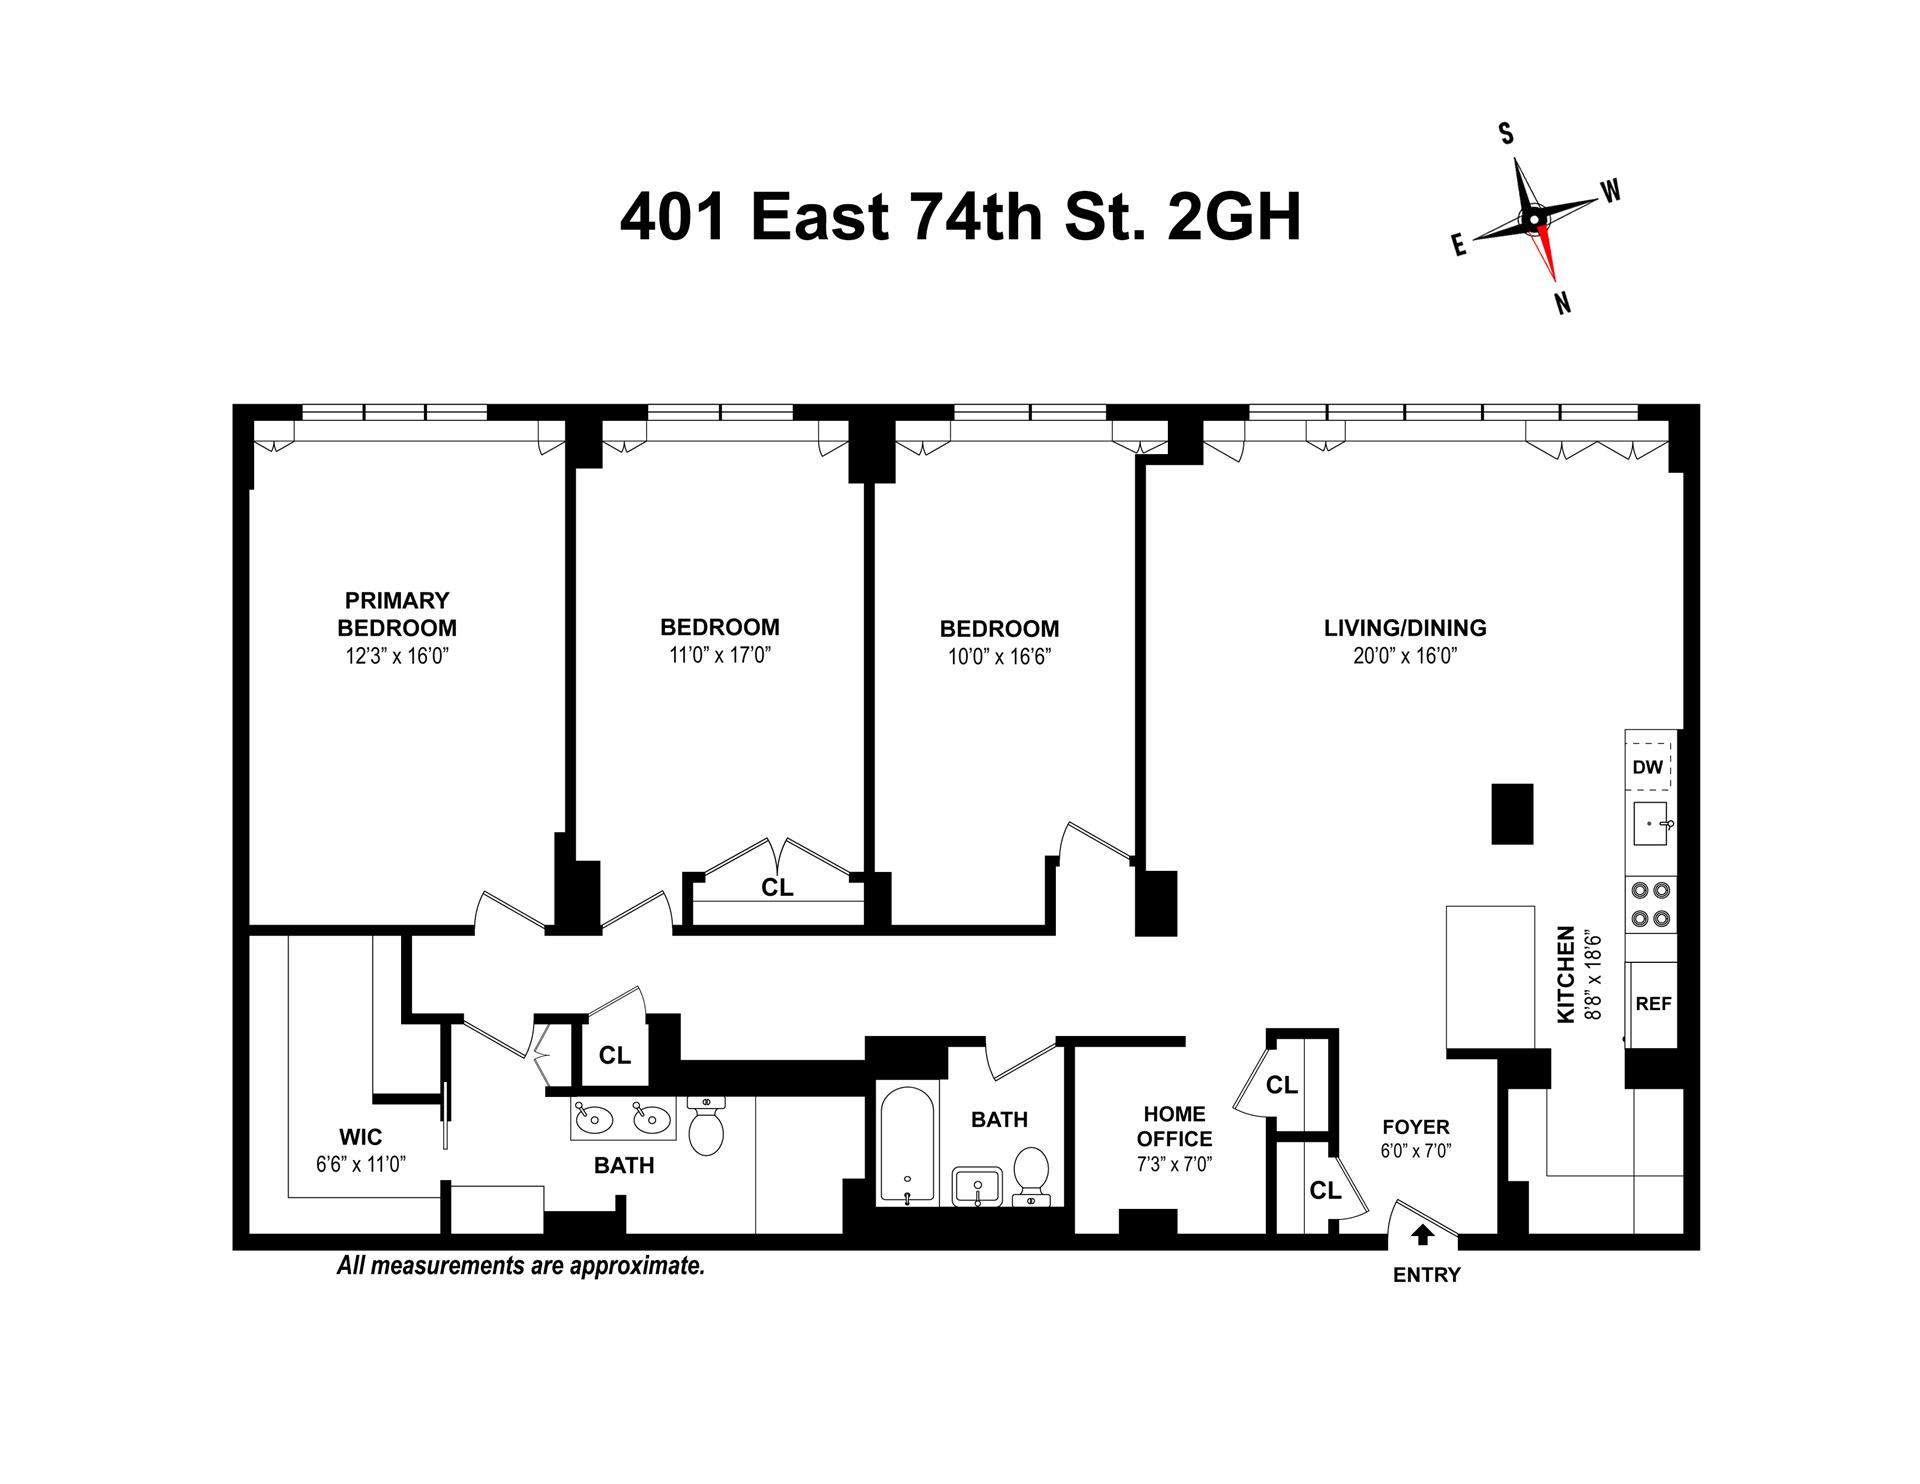 Floorplan for 401 East 74th Street, 2GH